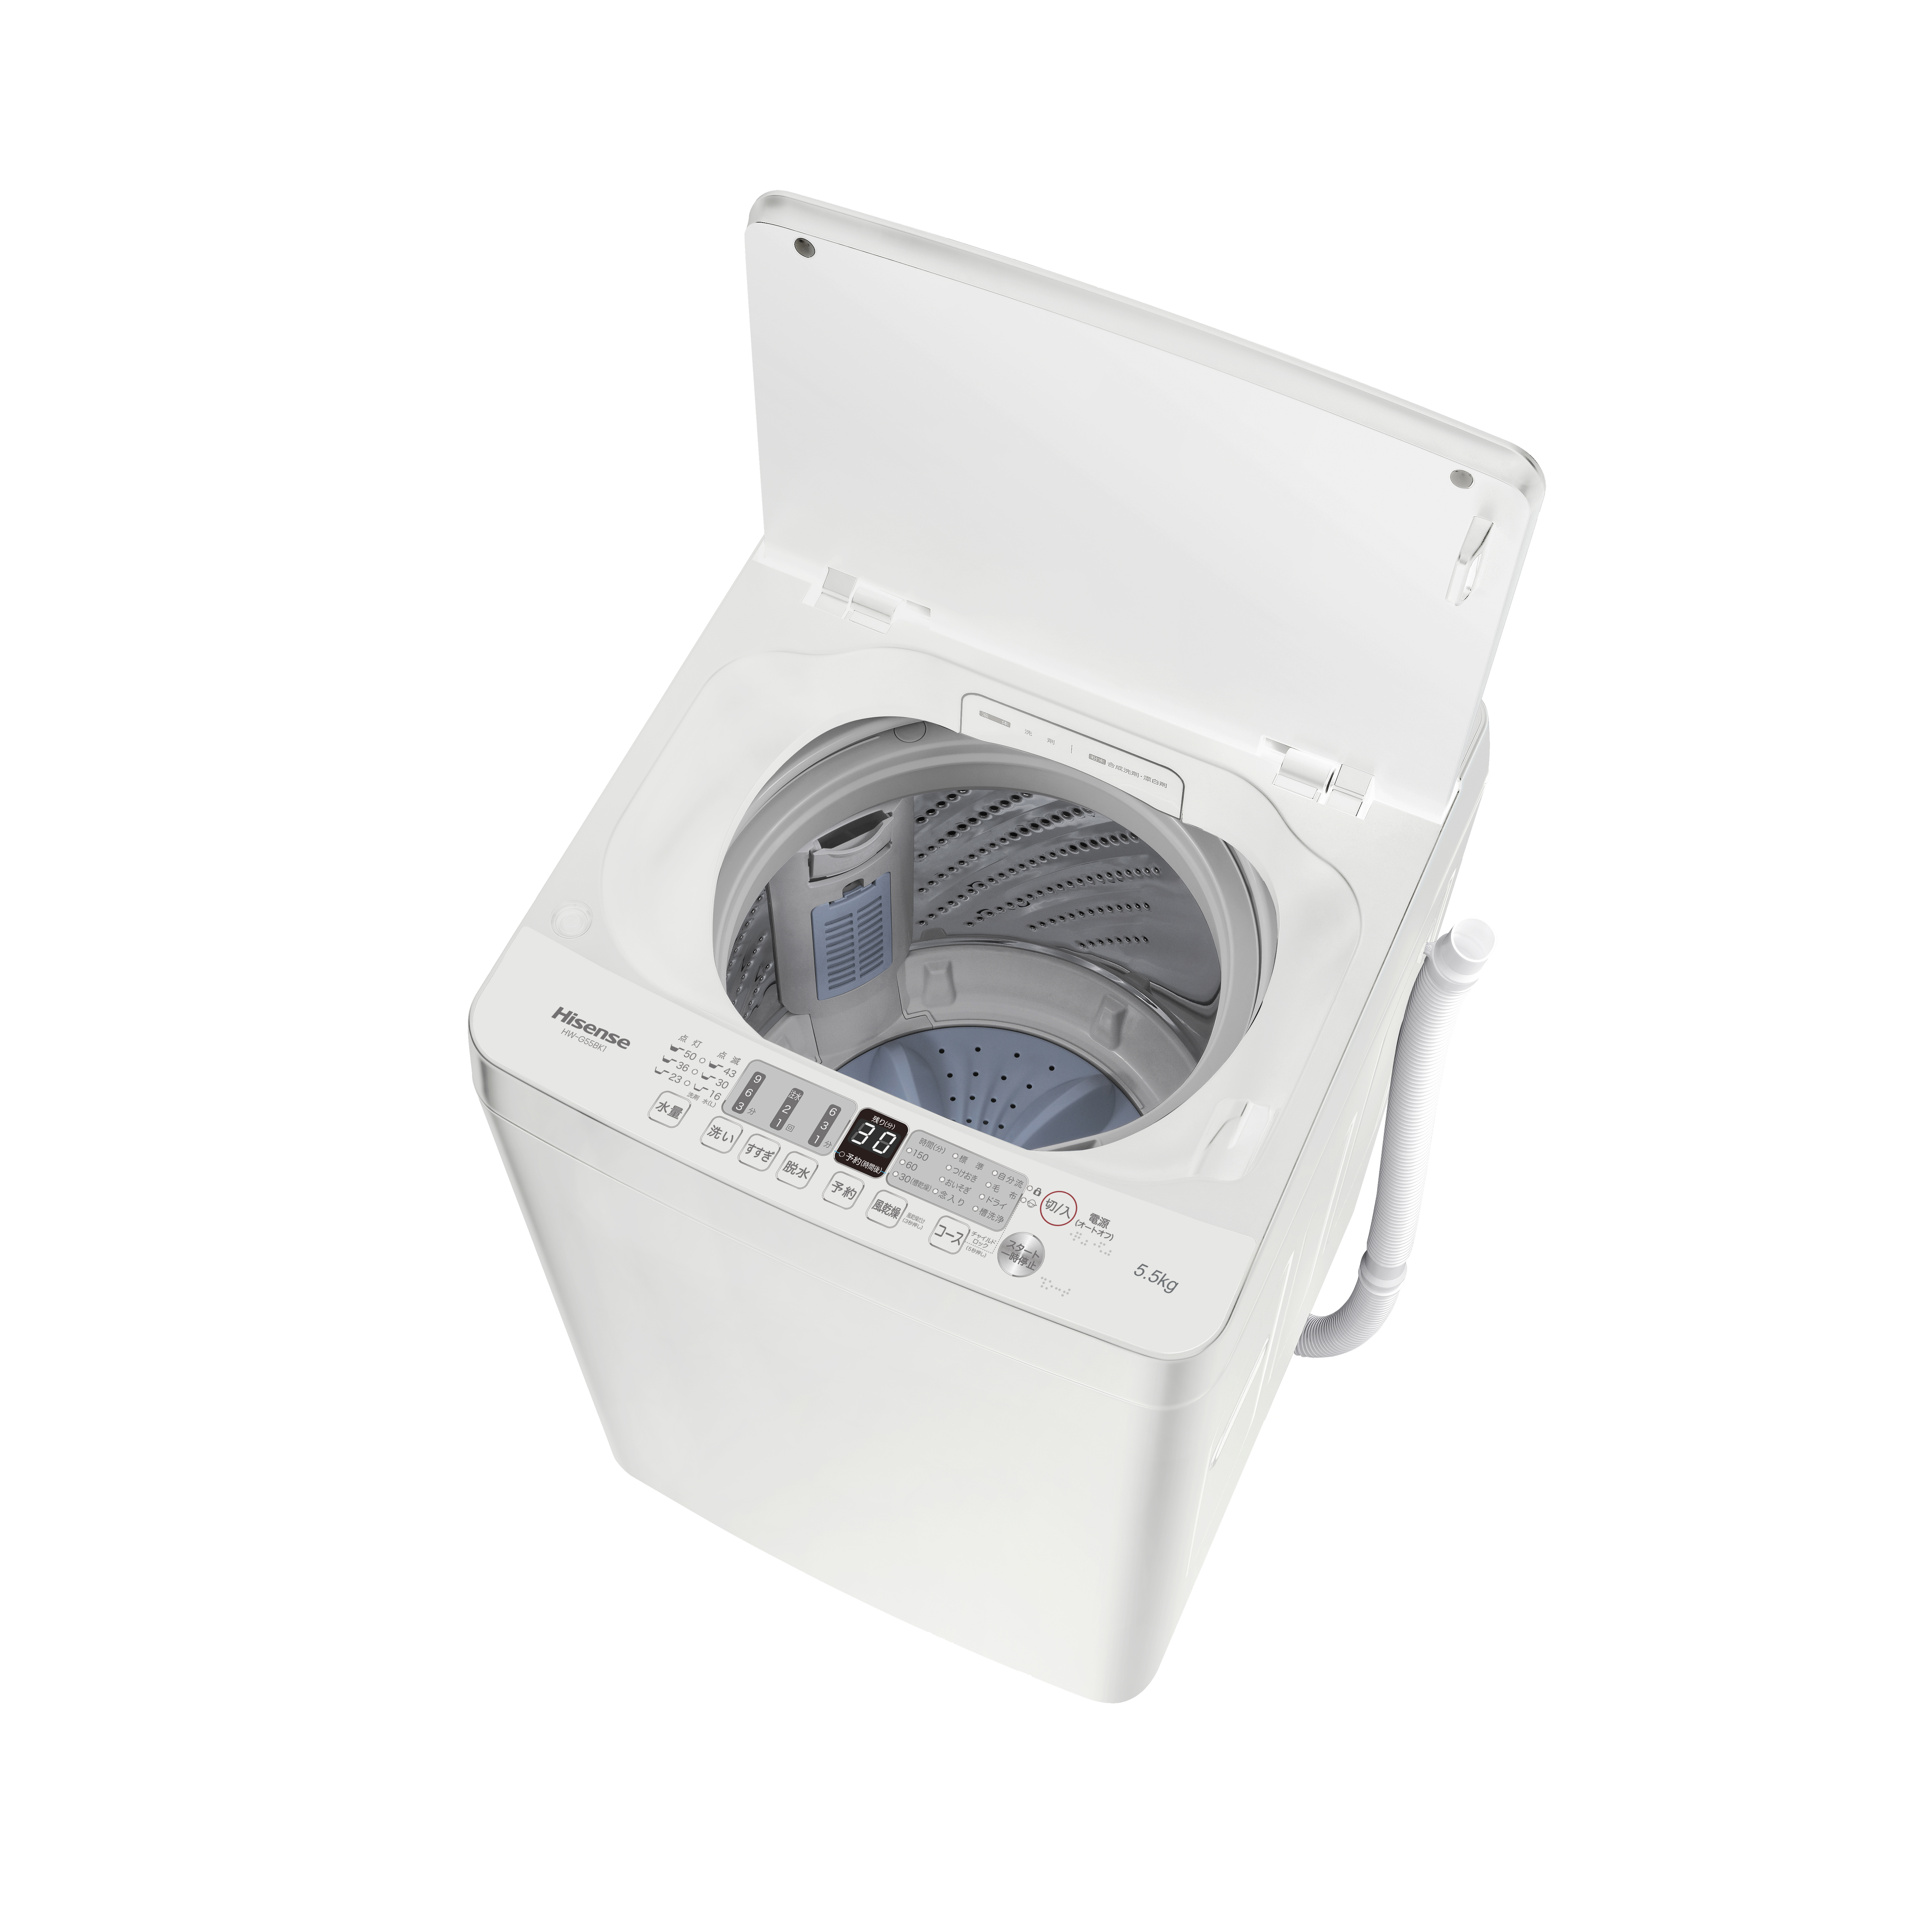 5.5kg 全自動洗濯機 HW-G55BK1| ハイセンスジャパン株式会社